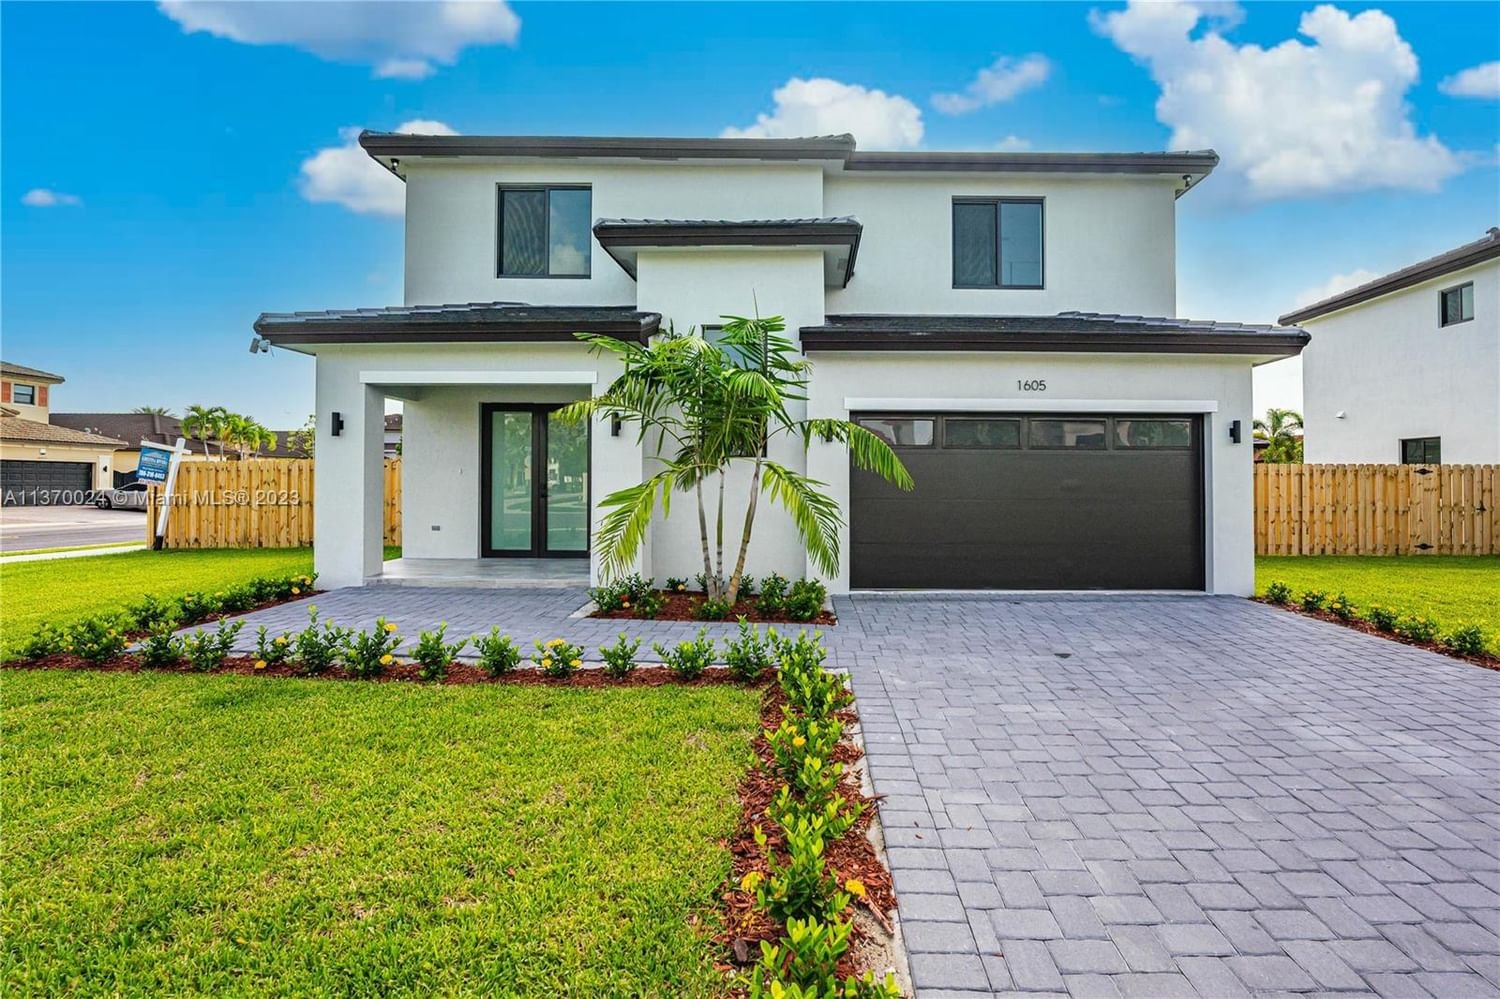 Real estate property located at 1605 145 Ave, Miami-Dade County, Biarena Subdivision, Miami, FL